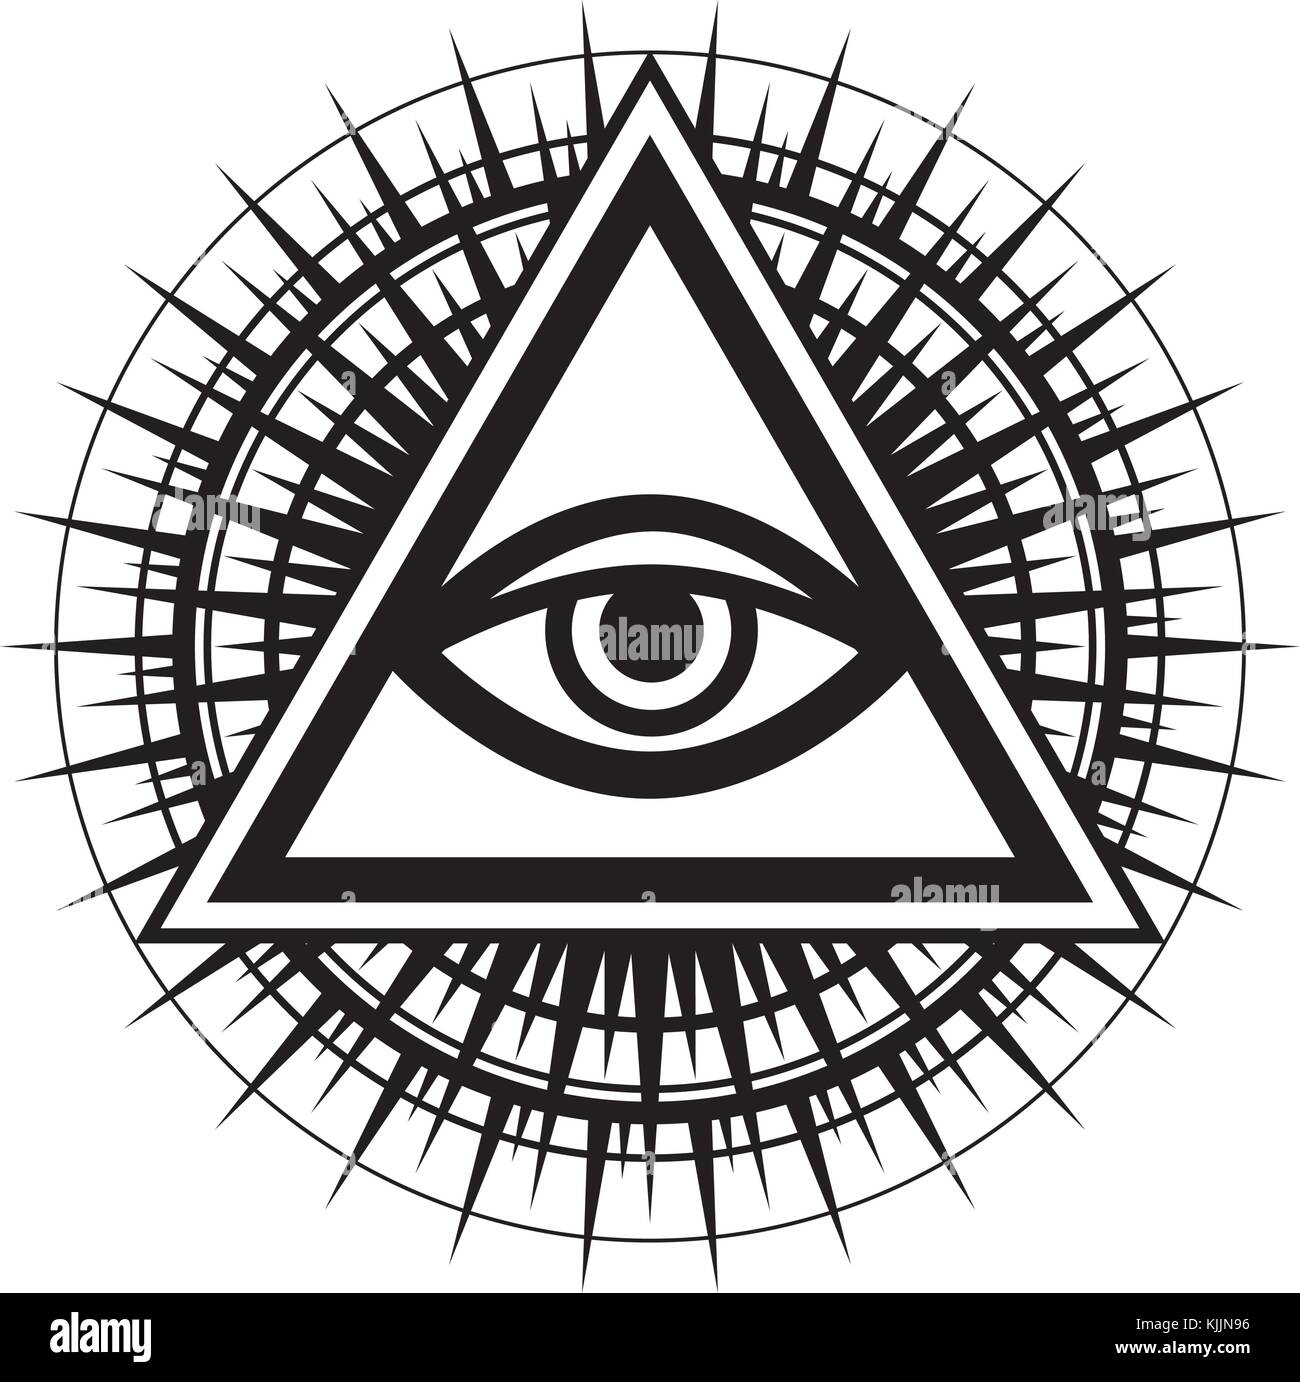 Alles sehende Auge Gottes (Das Auge der Vorsehung | Auge der Allwissenheit | leuchtende Delta | Oculus Dei). Mystische Symbol der Illuminaten und Freimaurer. Stock Vektor